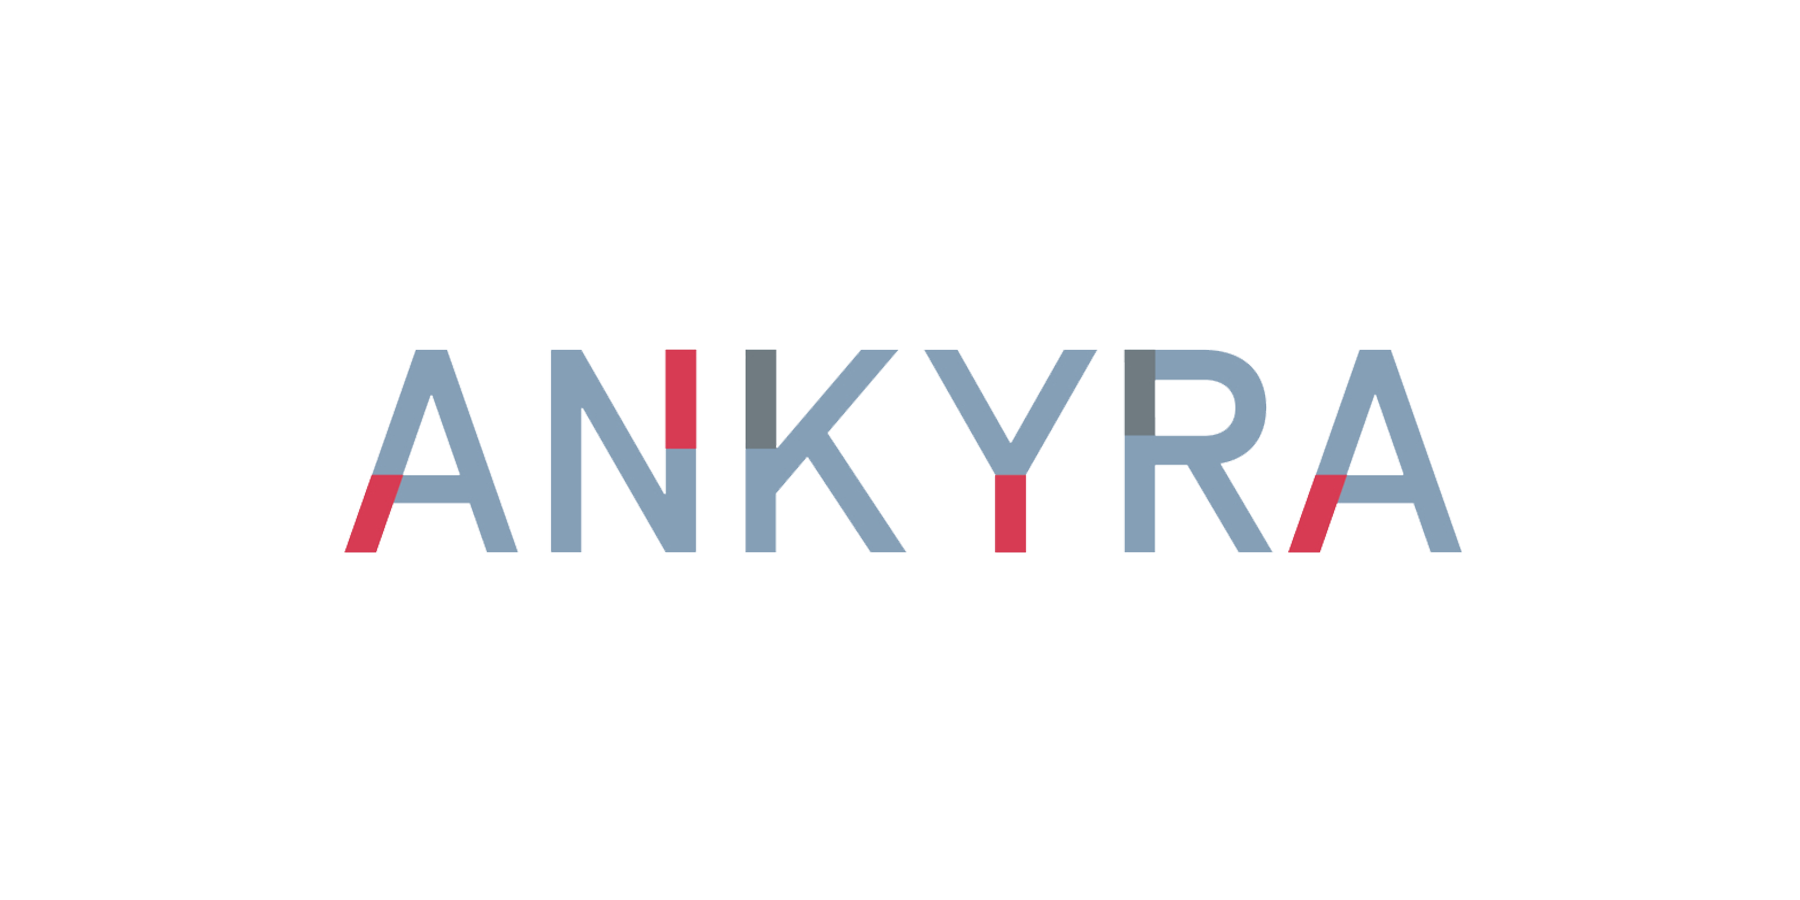 Ankyra logo